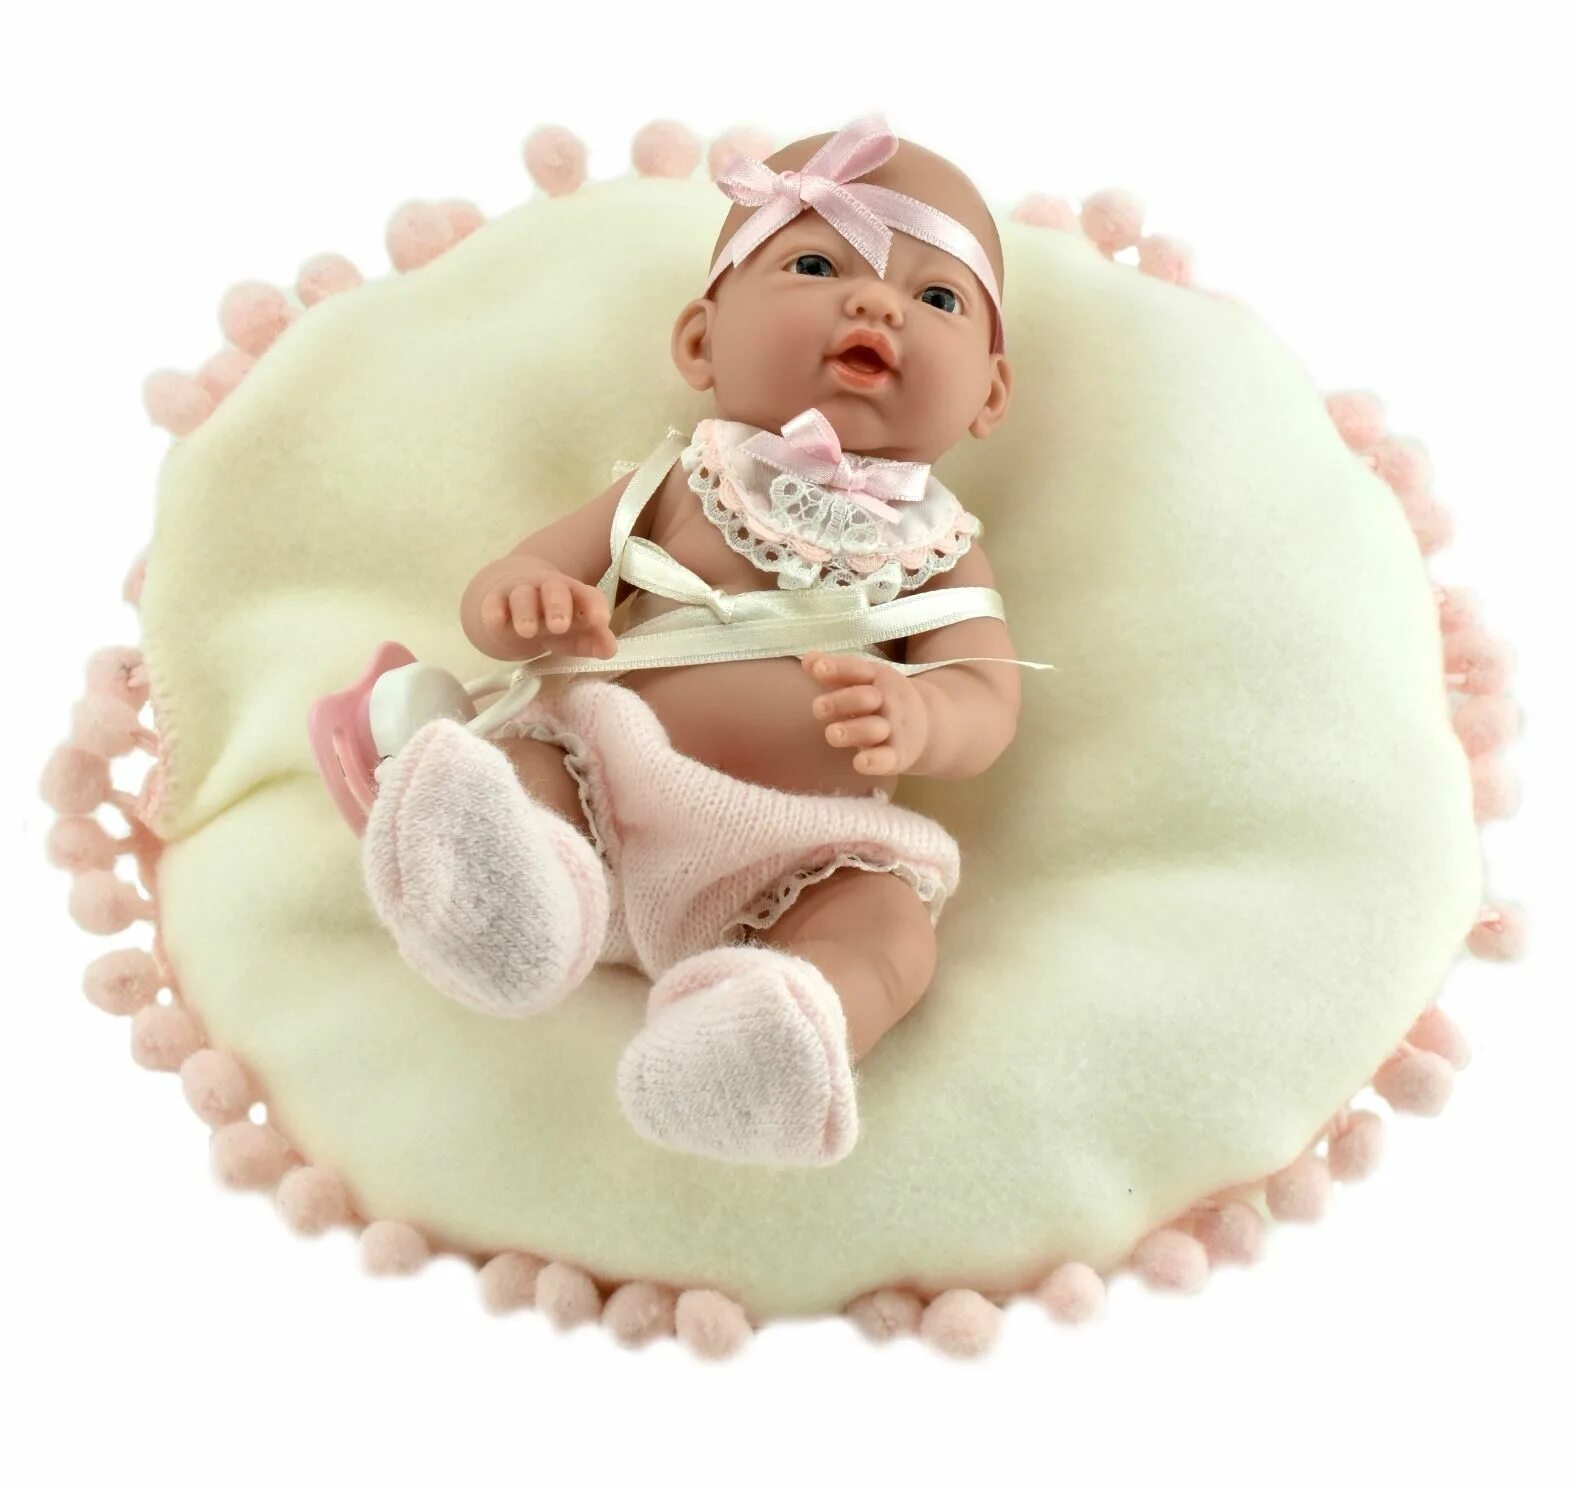 Мини пупсы. Nines d'Onil куклы 45 с подушечкой. Текстильные пупсы младенцы. Пупс Nines artesanals d'Onil новорожденный малыш в теплом комбинезоне с одеялом (в коробке, вид 1), 45 см.